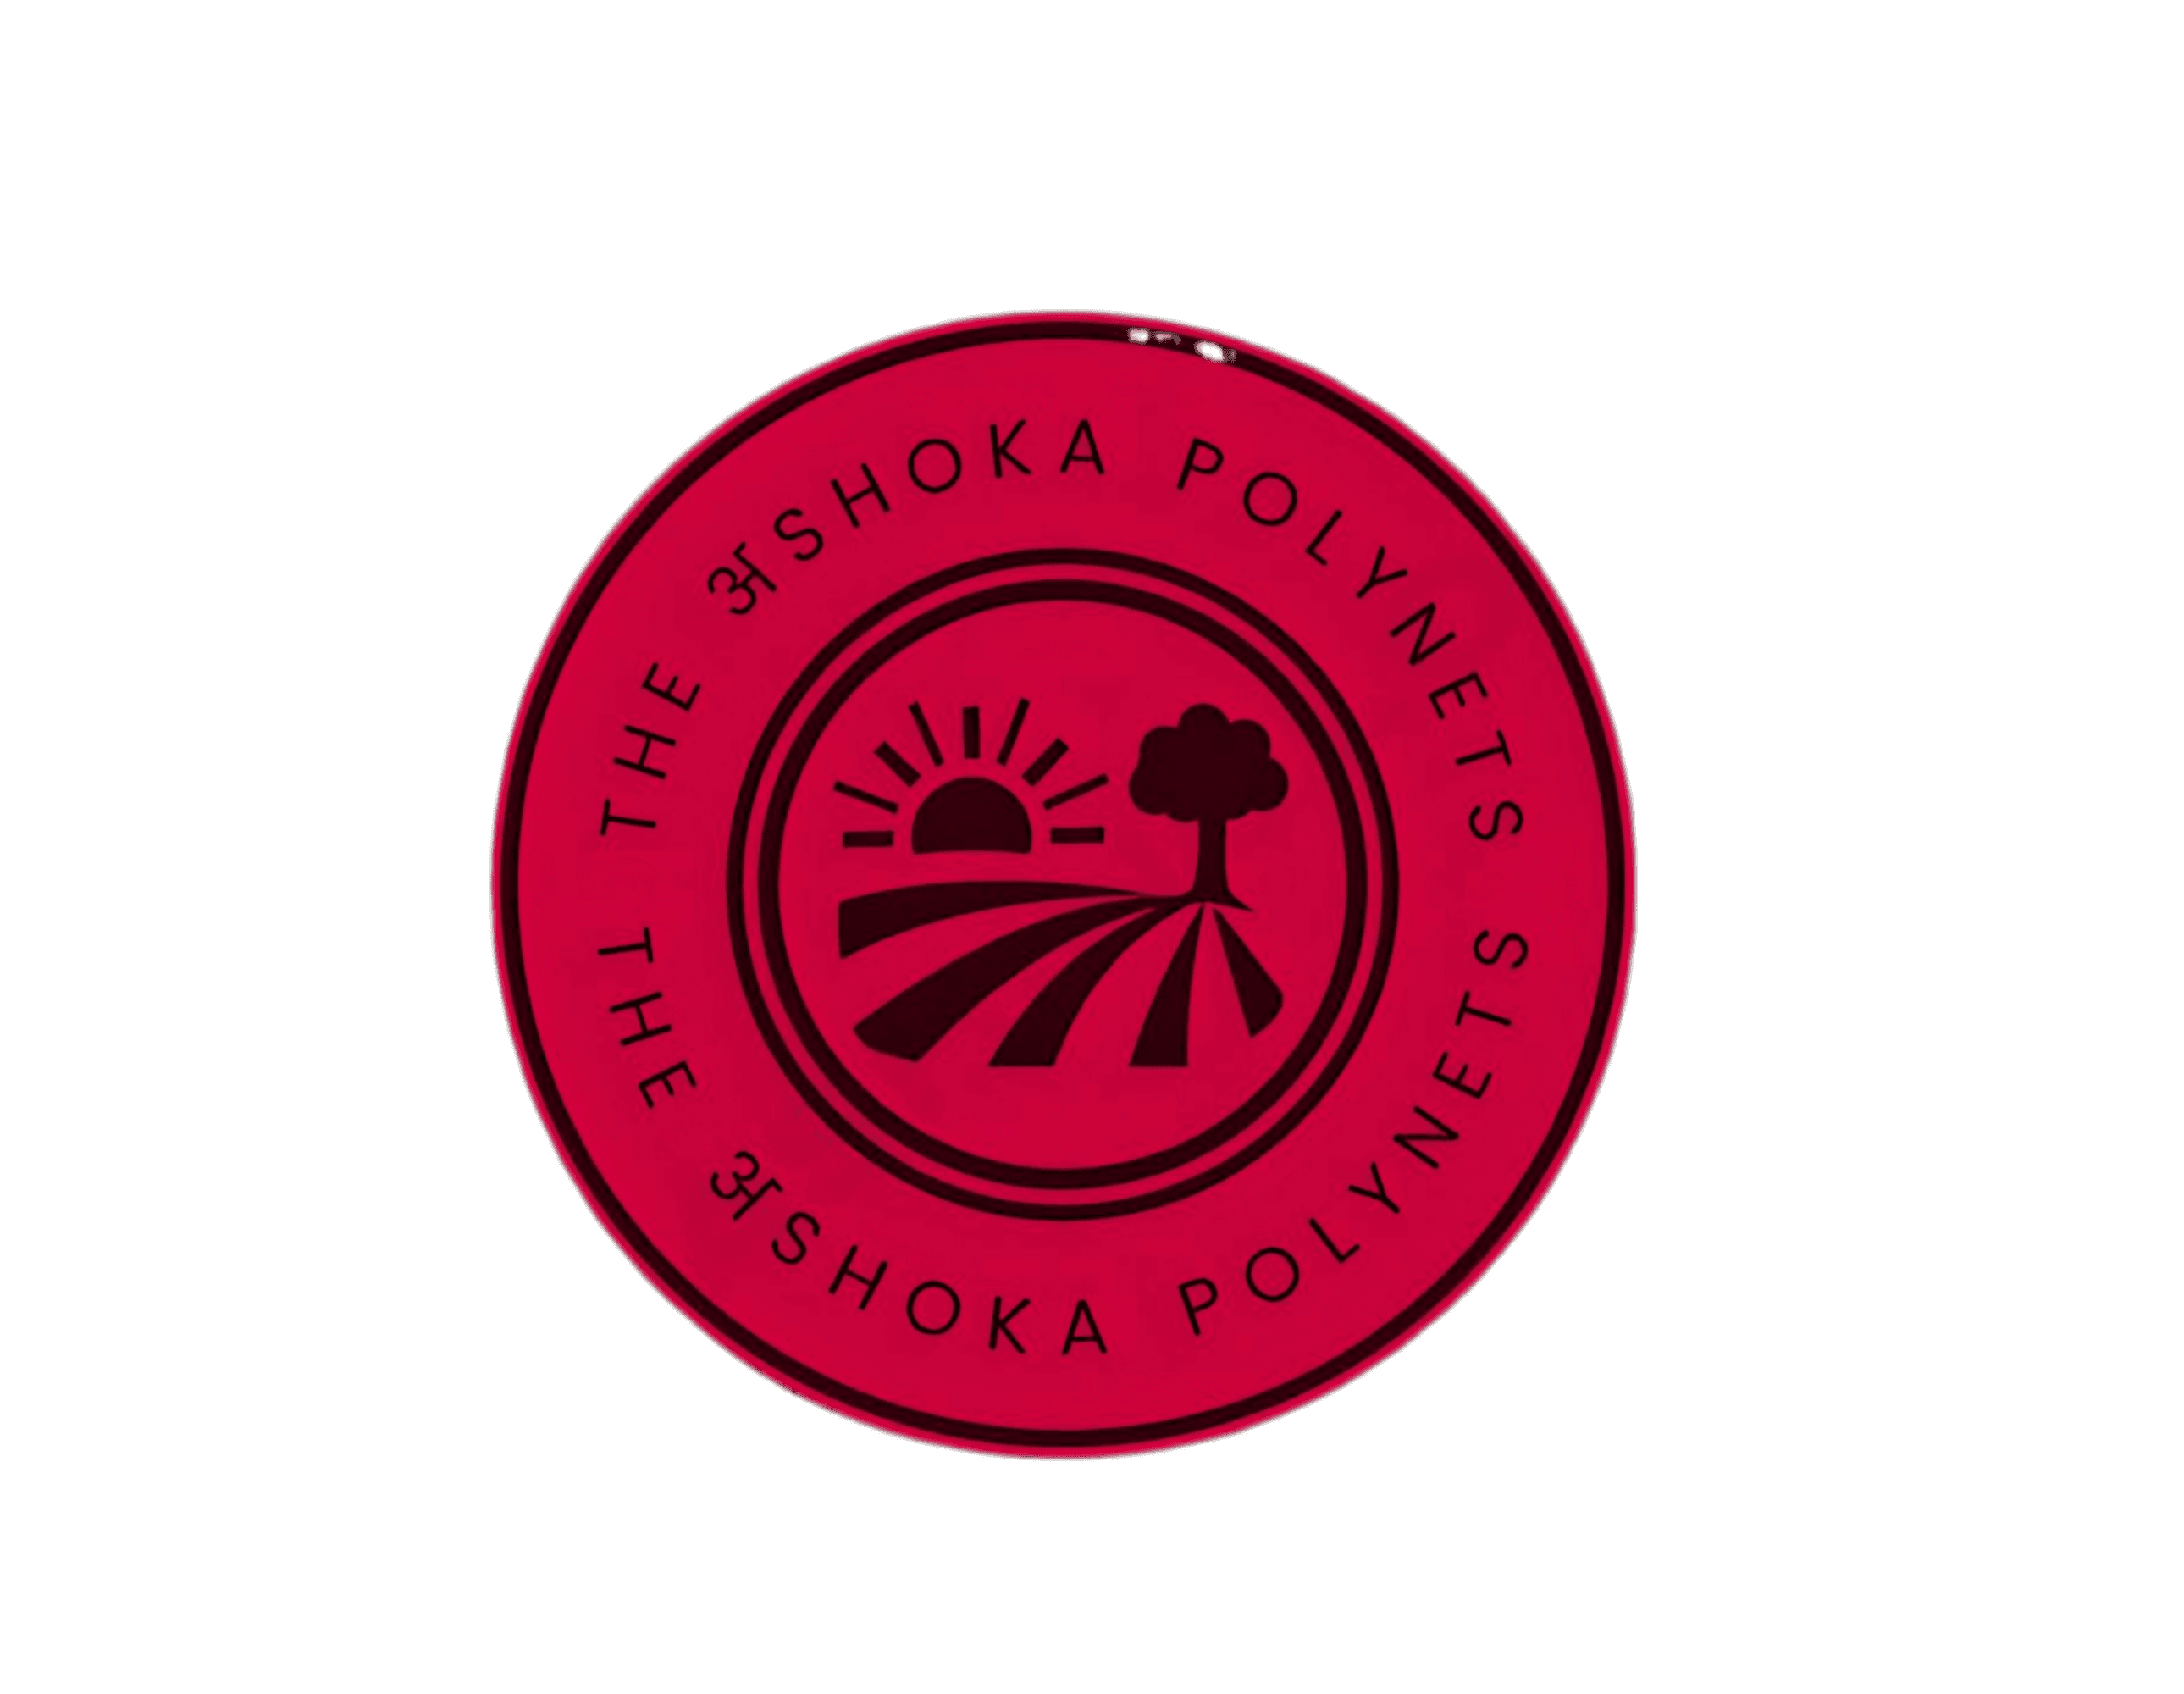 the ashoka polynets